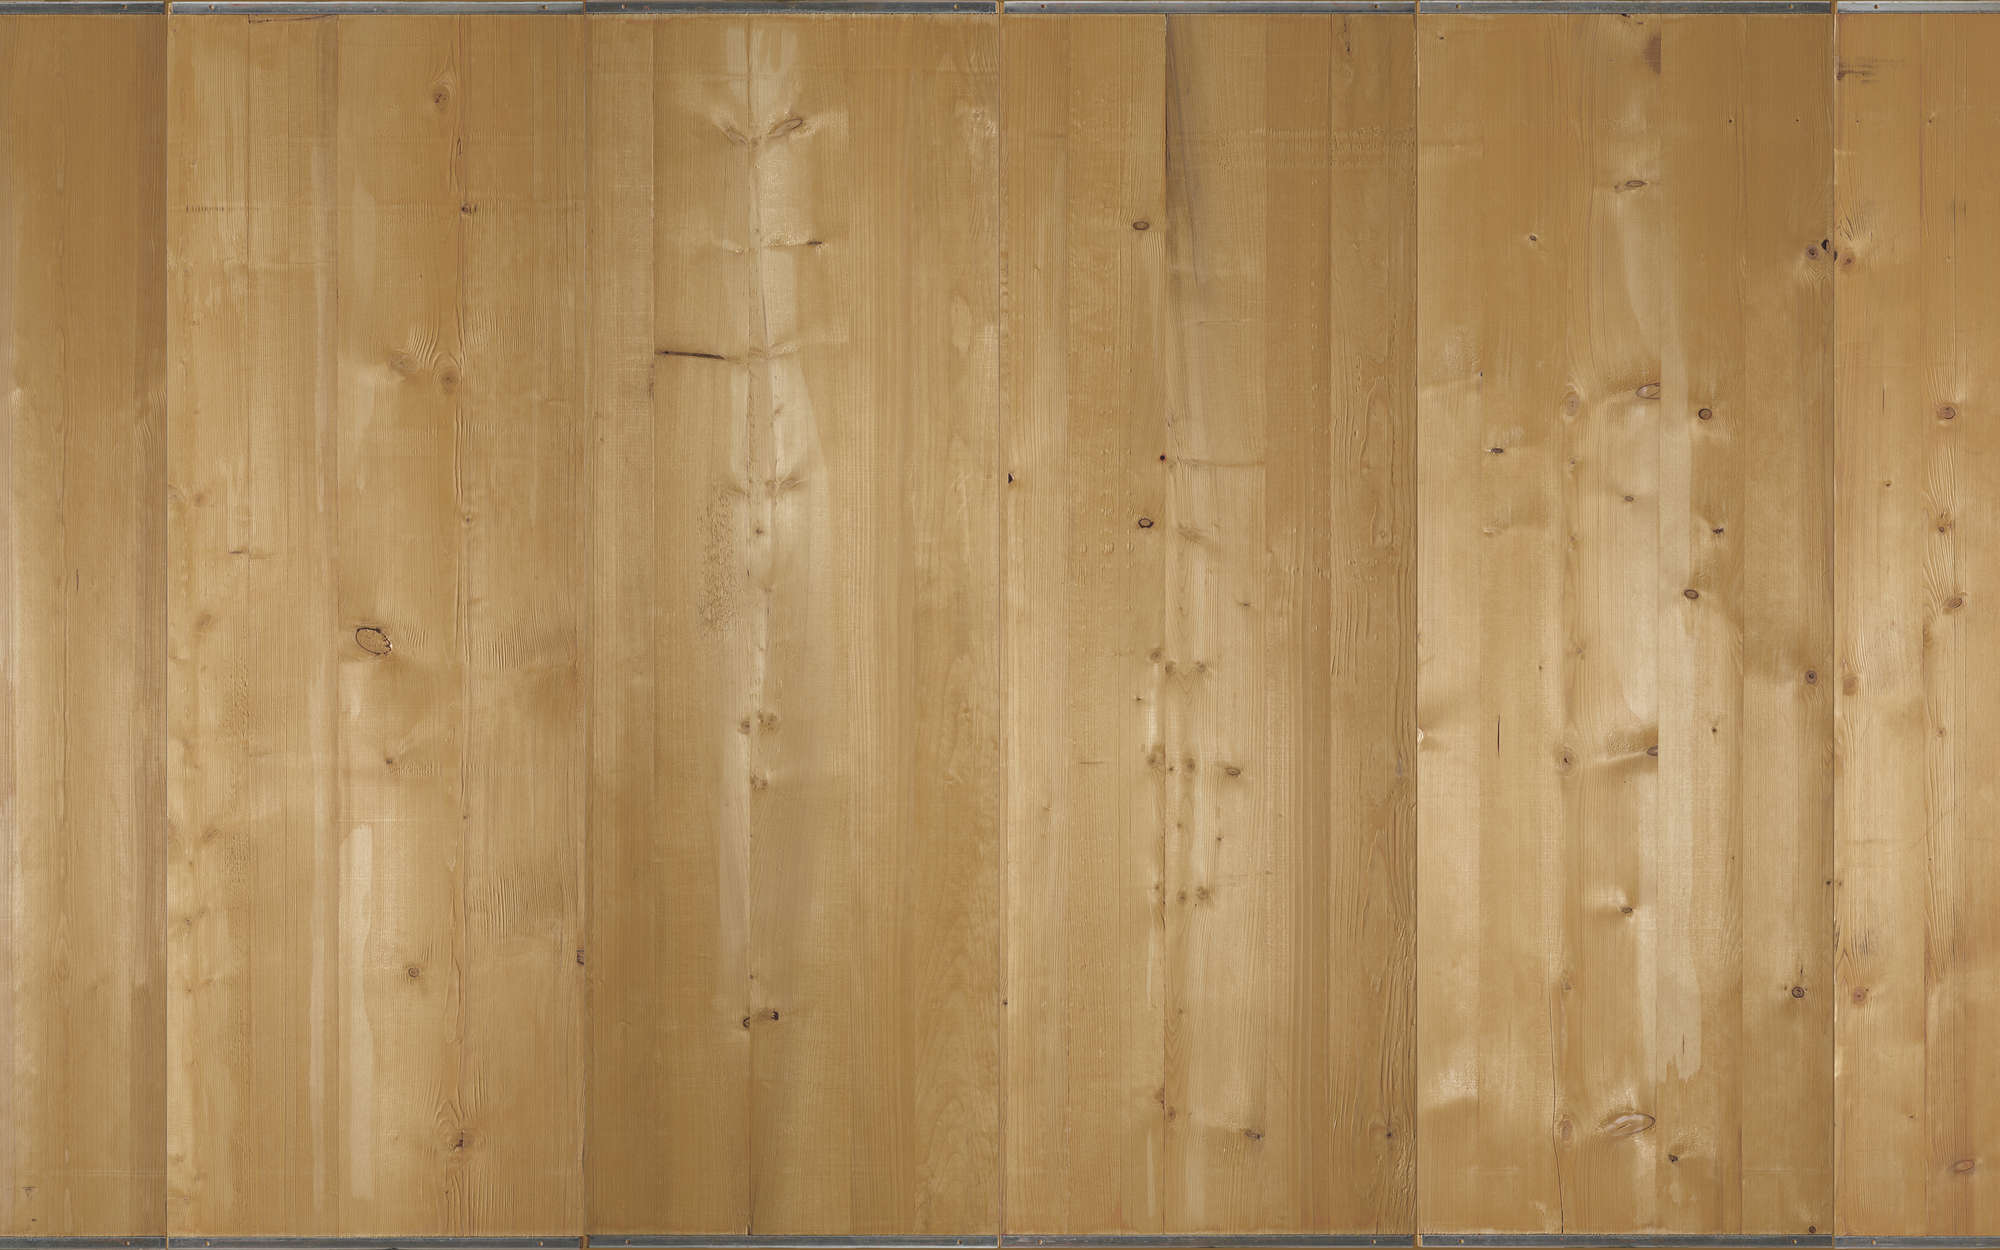             Fotomurali a listoni di legno chiaro - vello liscio madreperlato
        